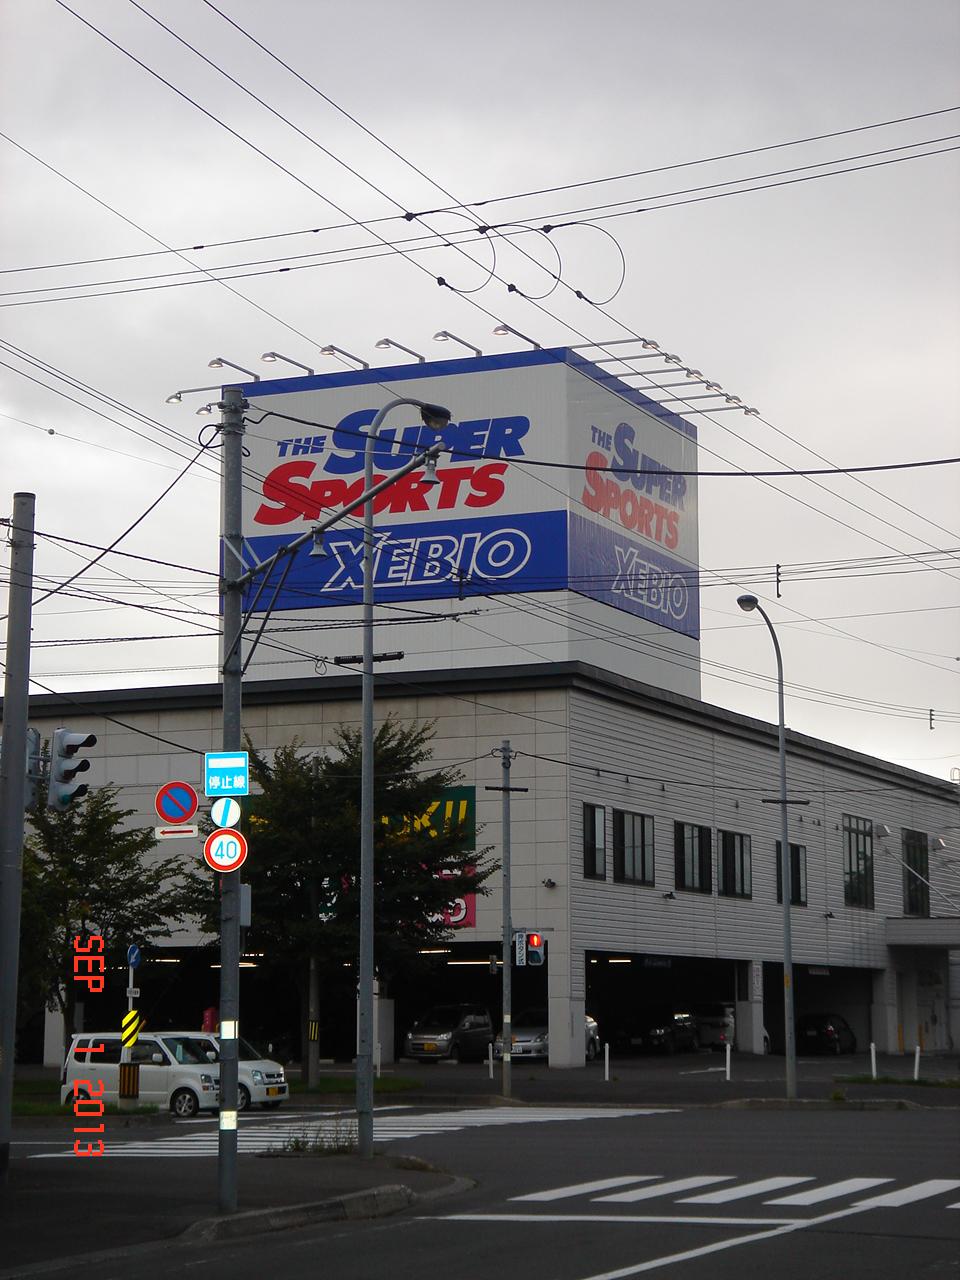 Shopping centre. 423m until the Super Sport Xebio Sapporo Pacific shop